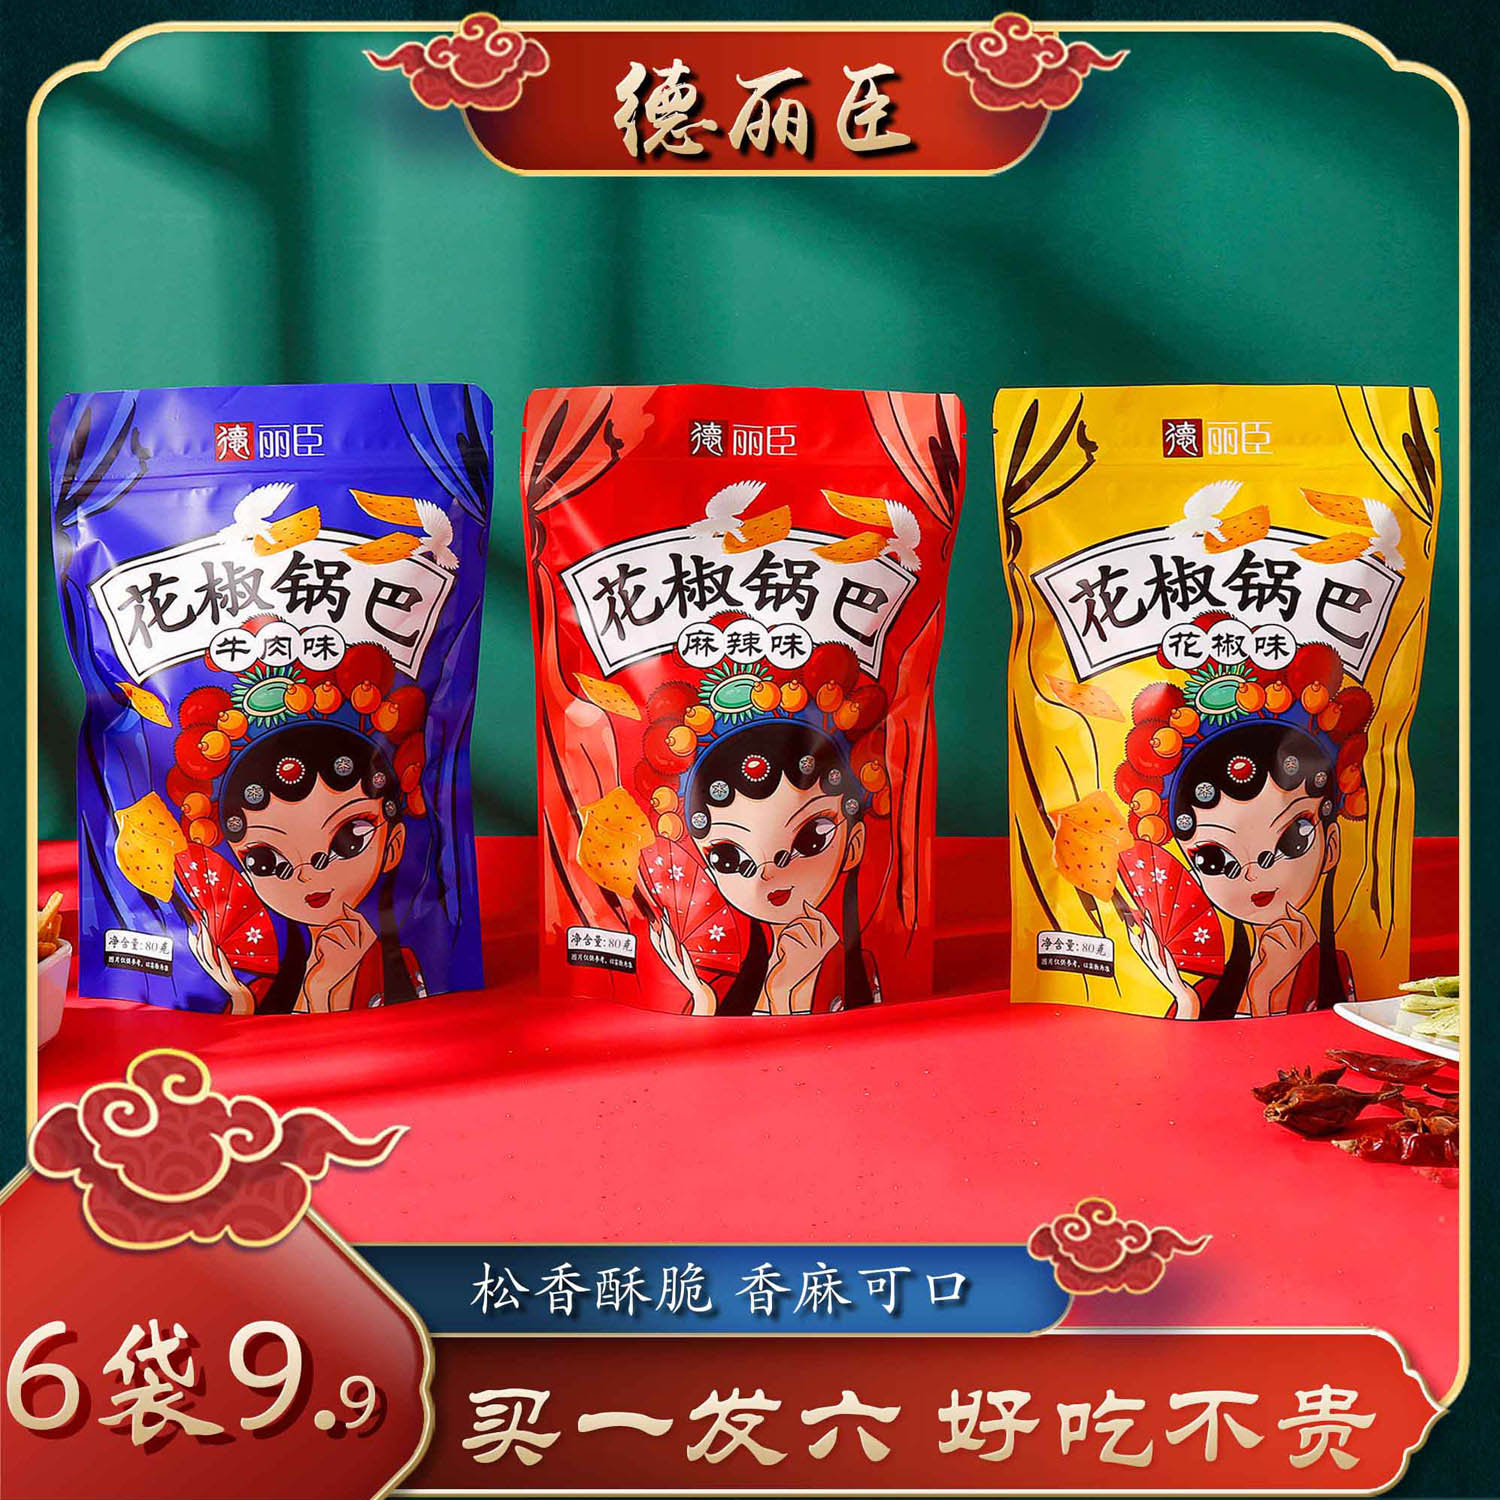 【6袋9.9】花椒锅巴网红食品小零食正品批发好吃的大礼包邮正品